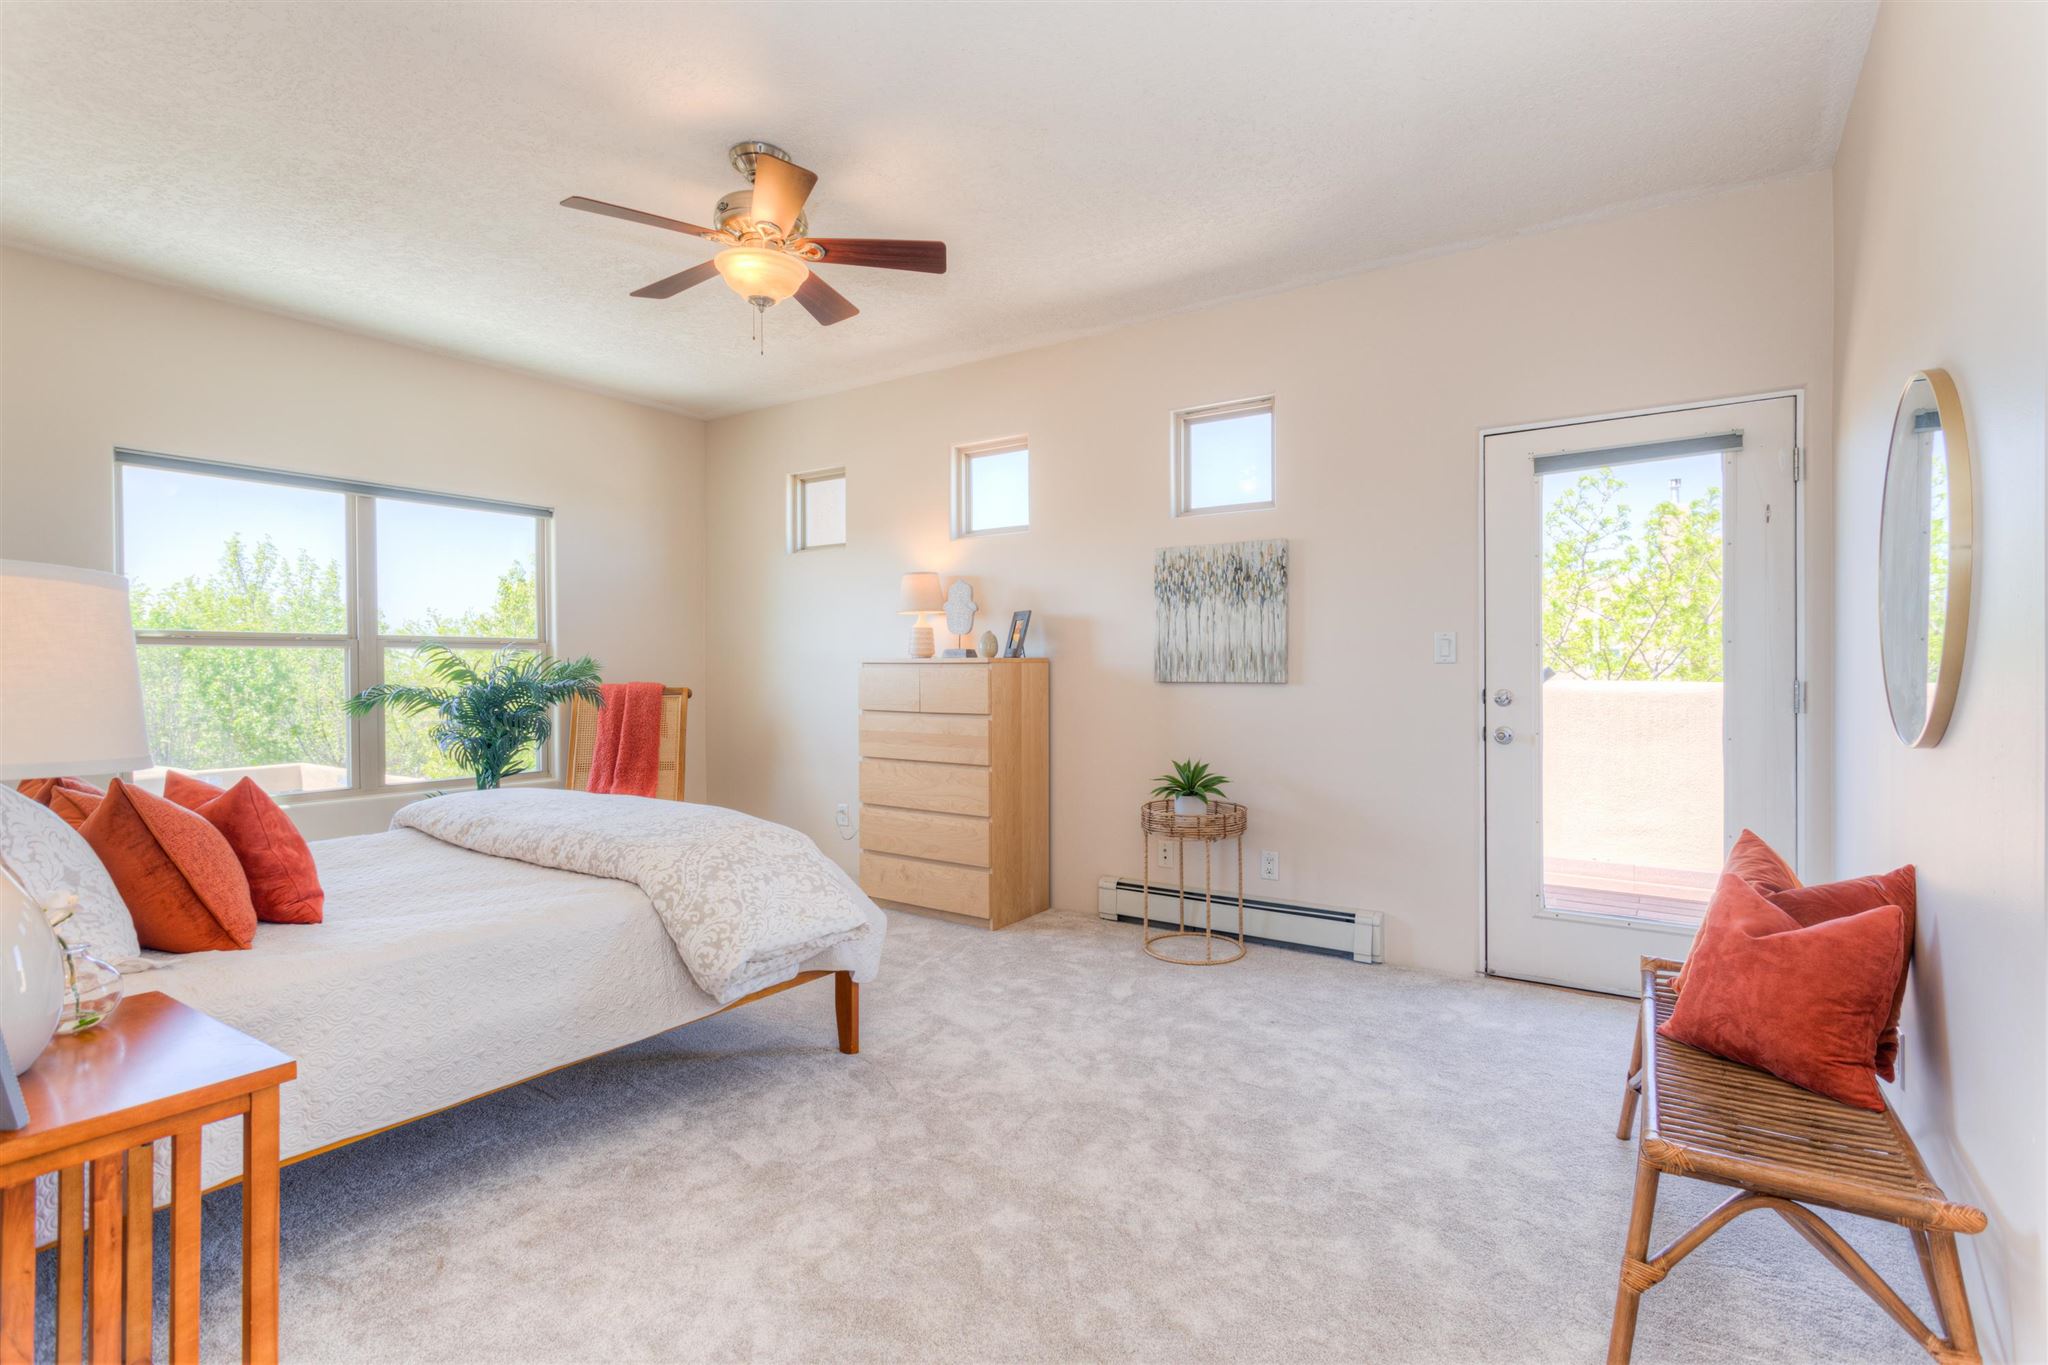 4309 Camino Lila, Santa Fe, New Mexico 87507, 3 Bedrooms Bedrooms, ,3 BathroomsBathrooms,Residential,For Sale,4309 Camino Lila,202101824